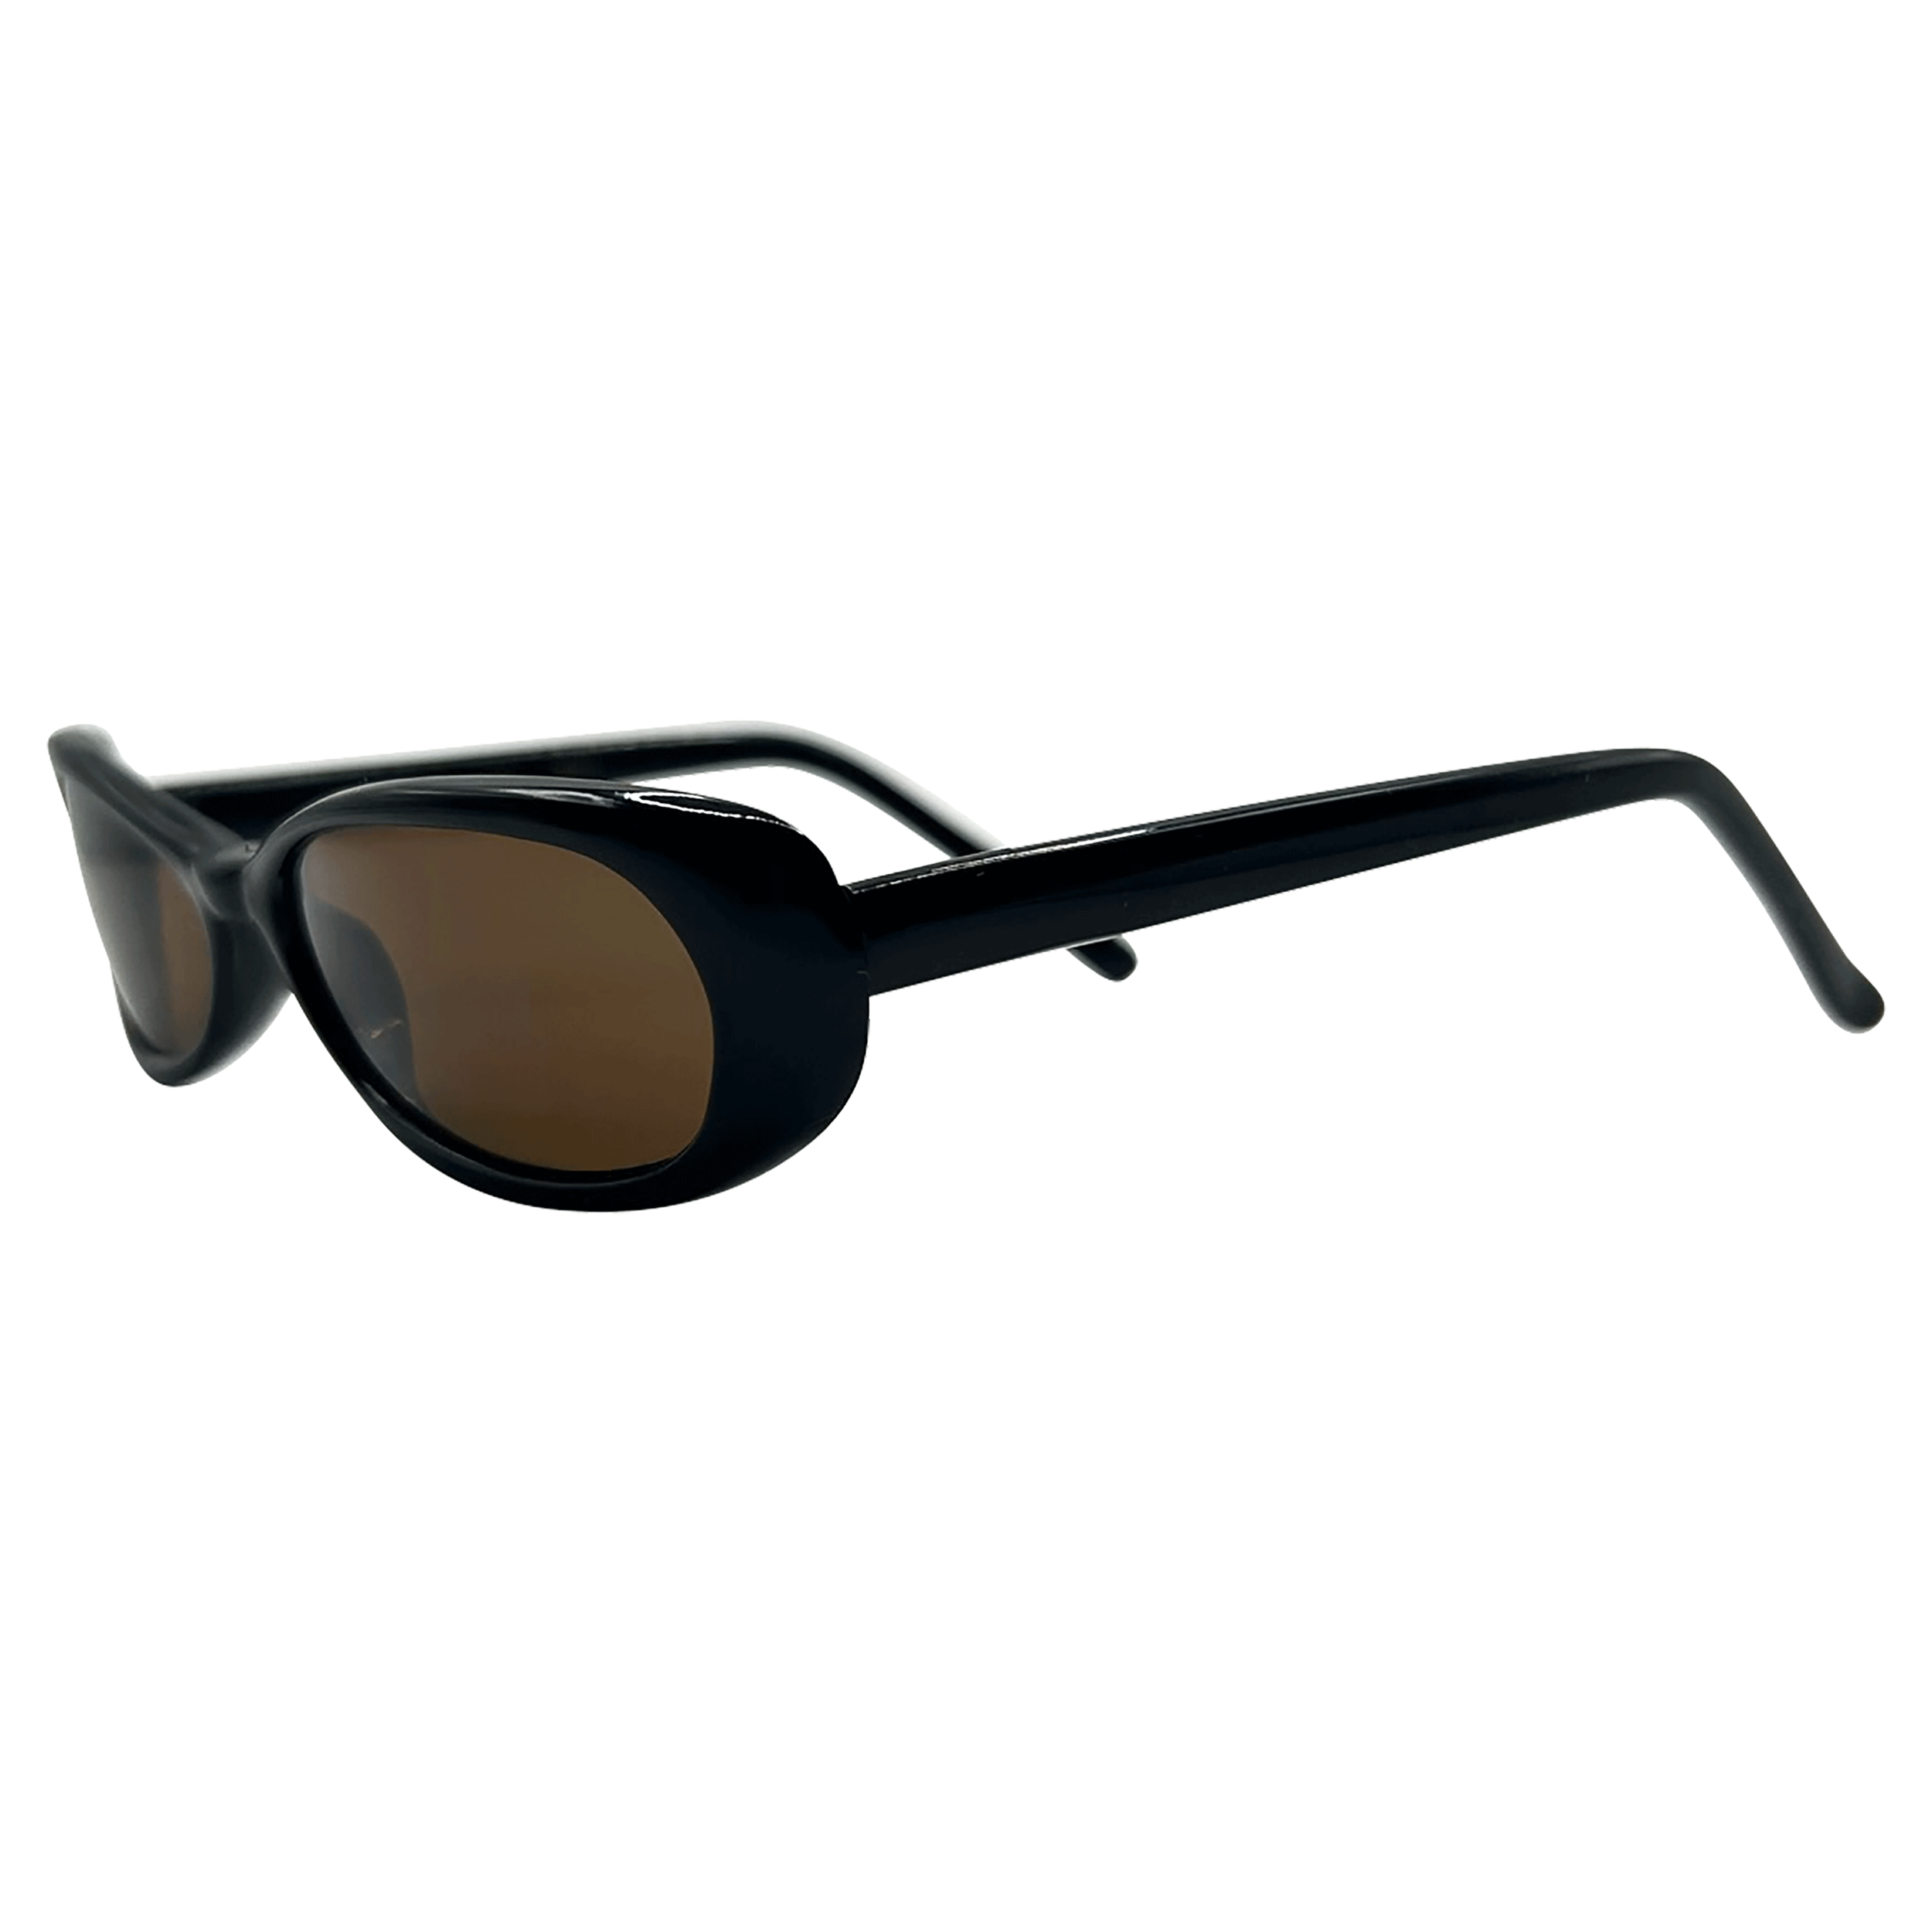 REGULARS Oval Sunglasses